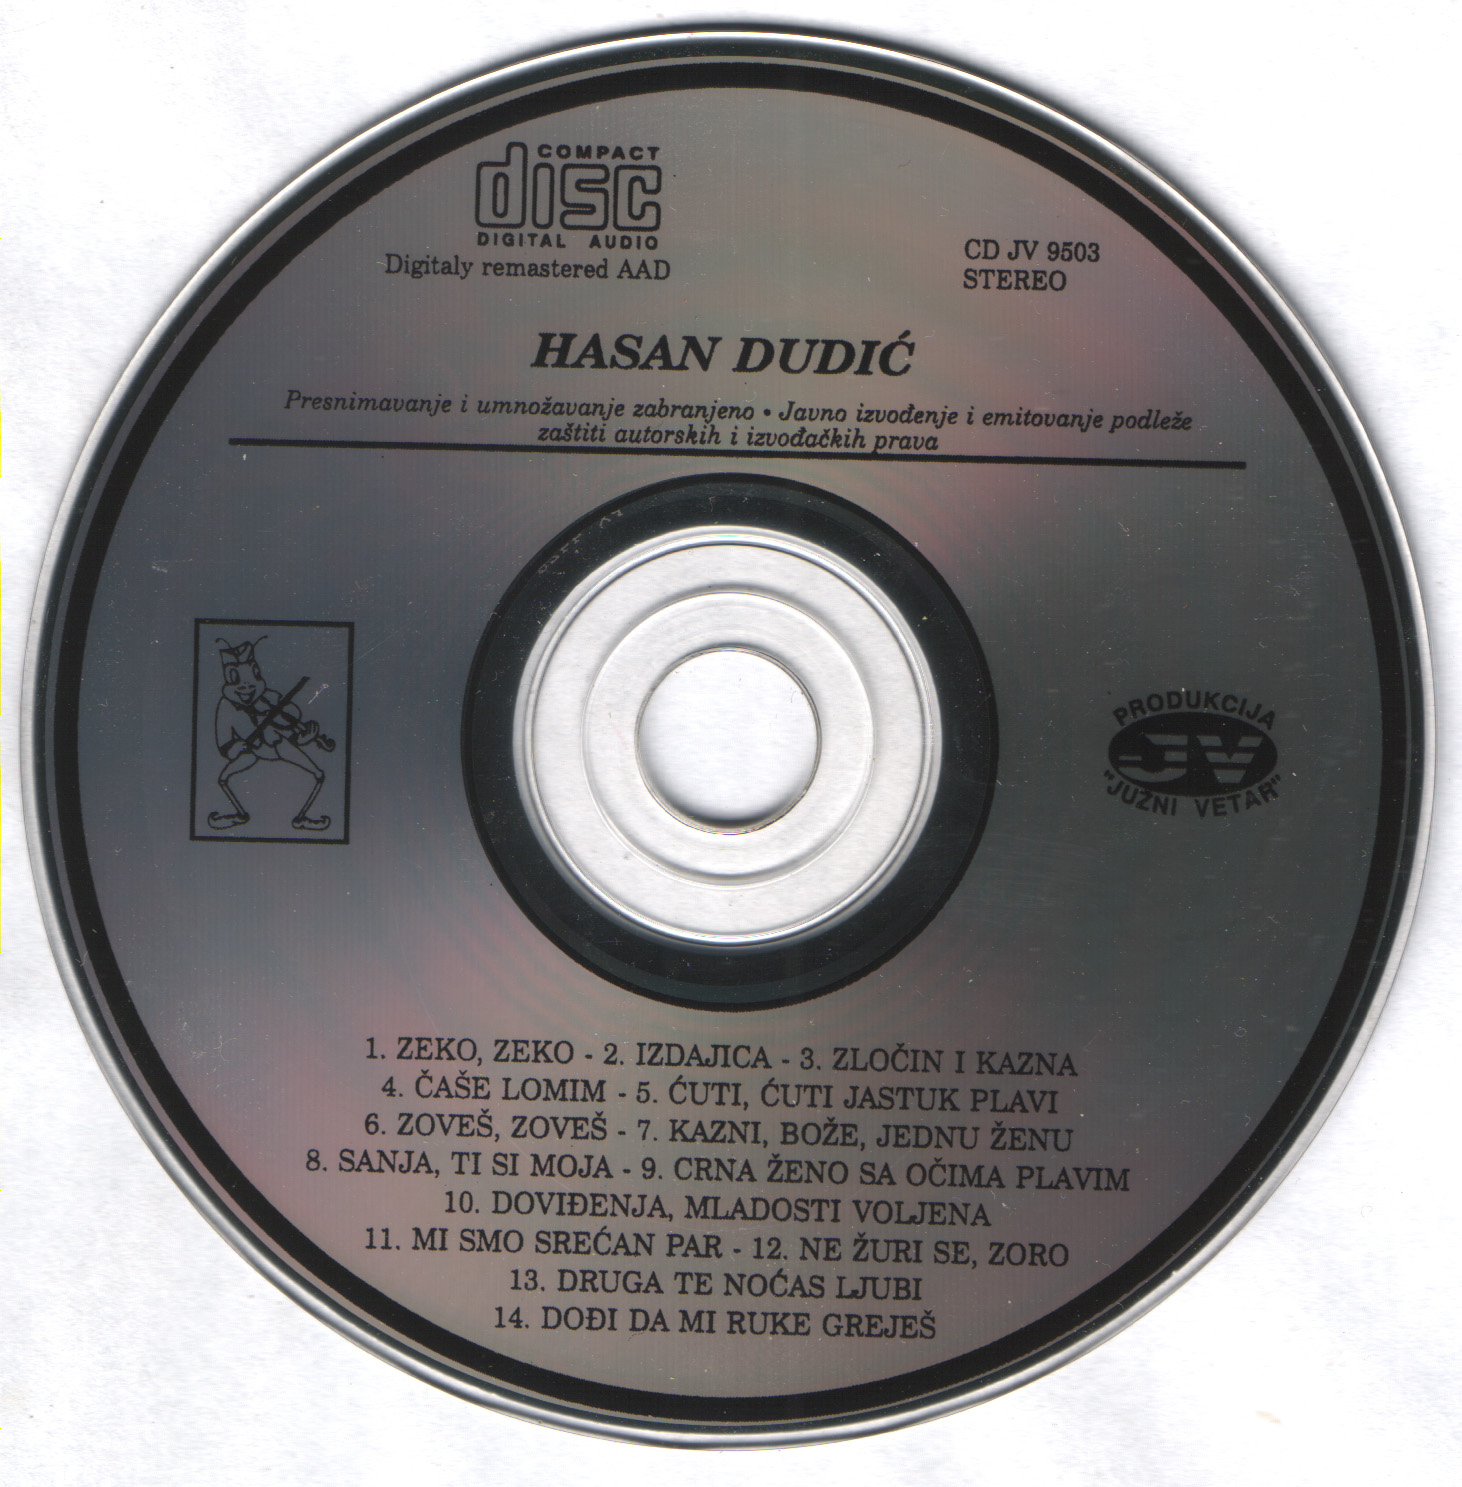 Hasam Dudic 1995 Cd